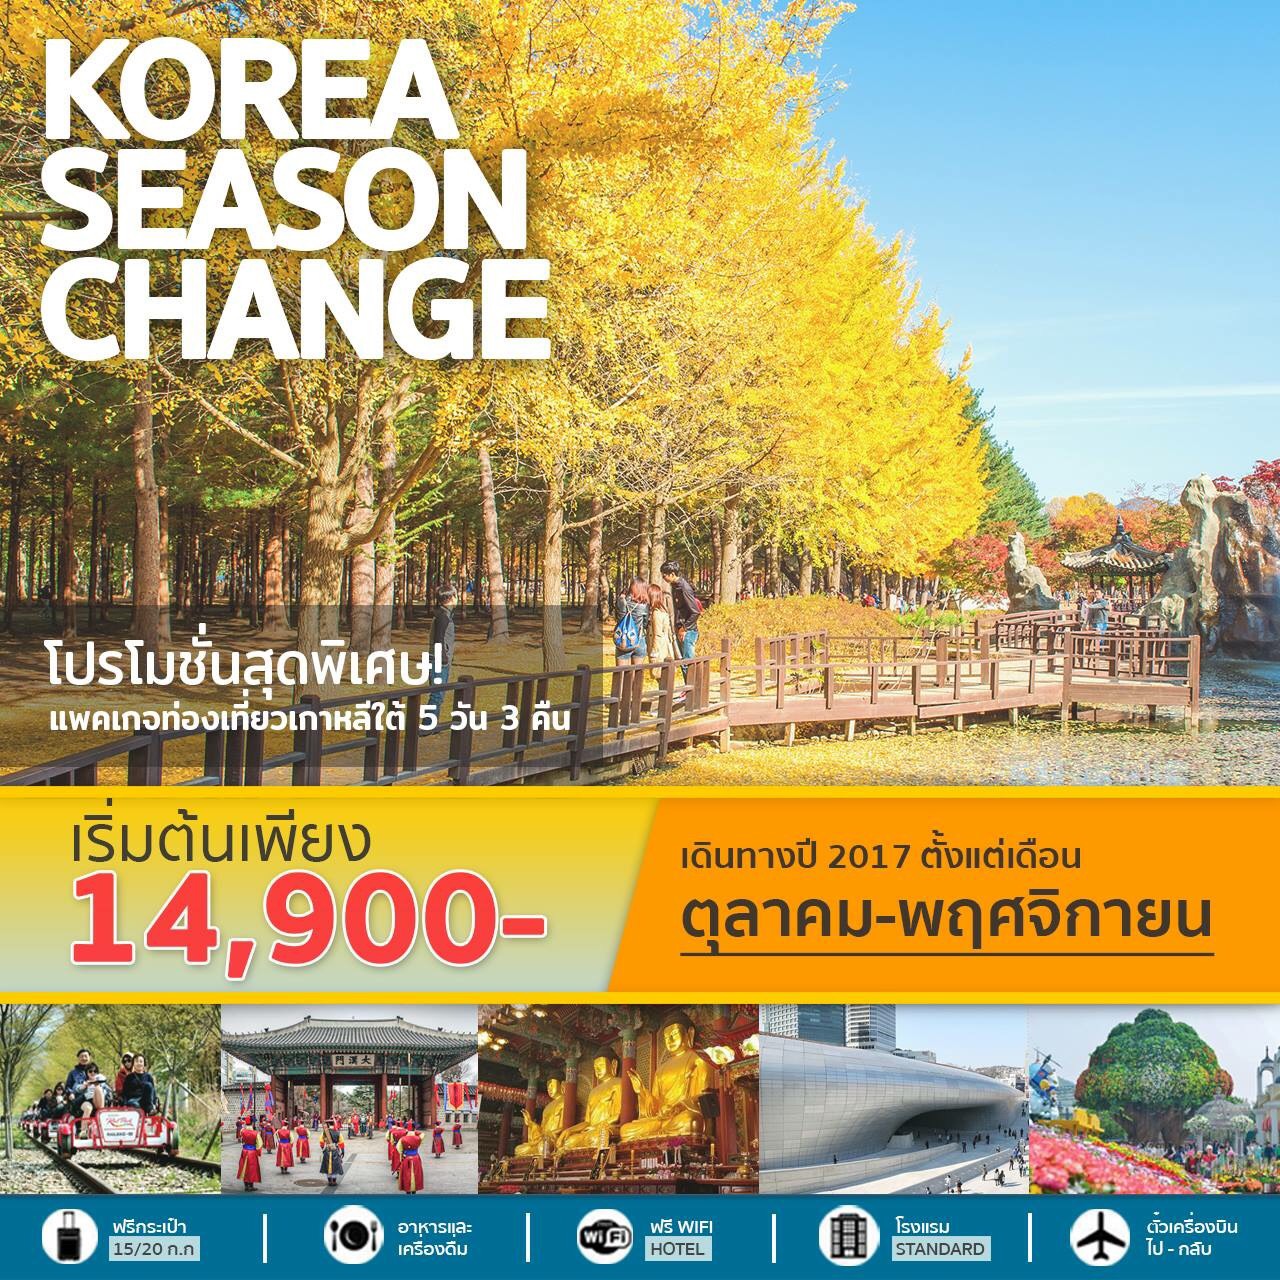 ทัวร์เกาหลี ชมใบไม้เปลี่ยนสี KOREA SEASON CHANGE 5วัน 3คืน เดินทาง ต.ค 60 - พ.ย 60 รูปที่ 1